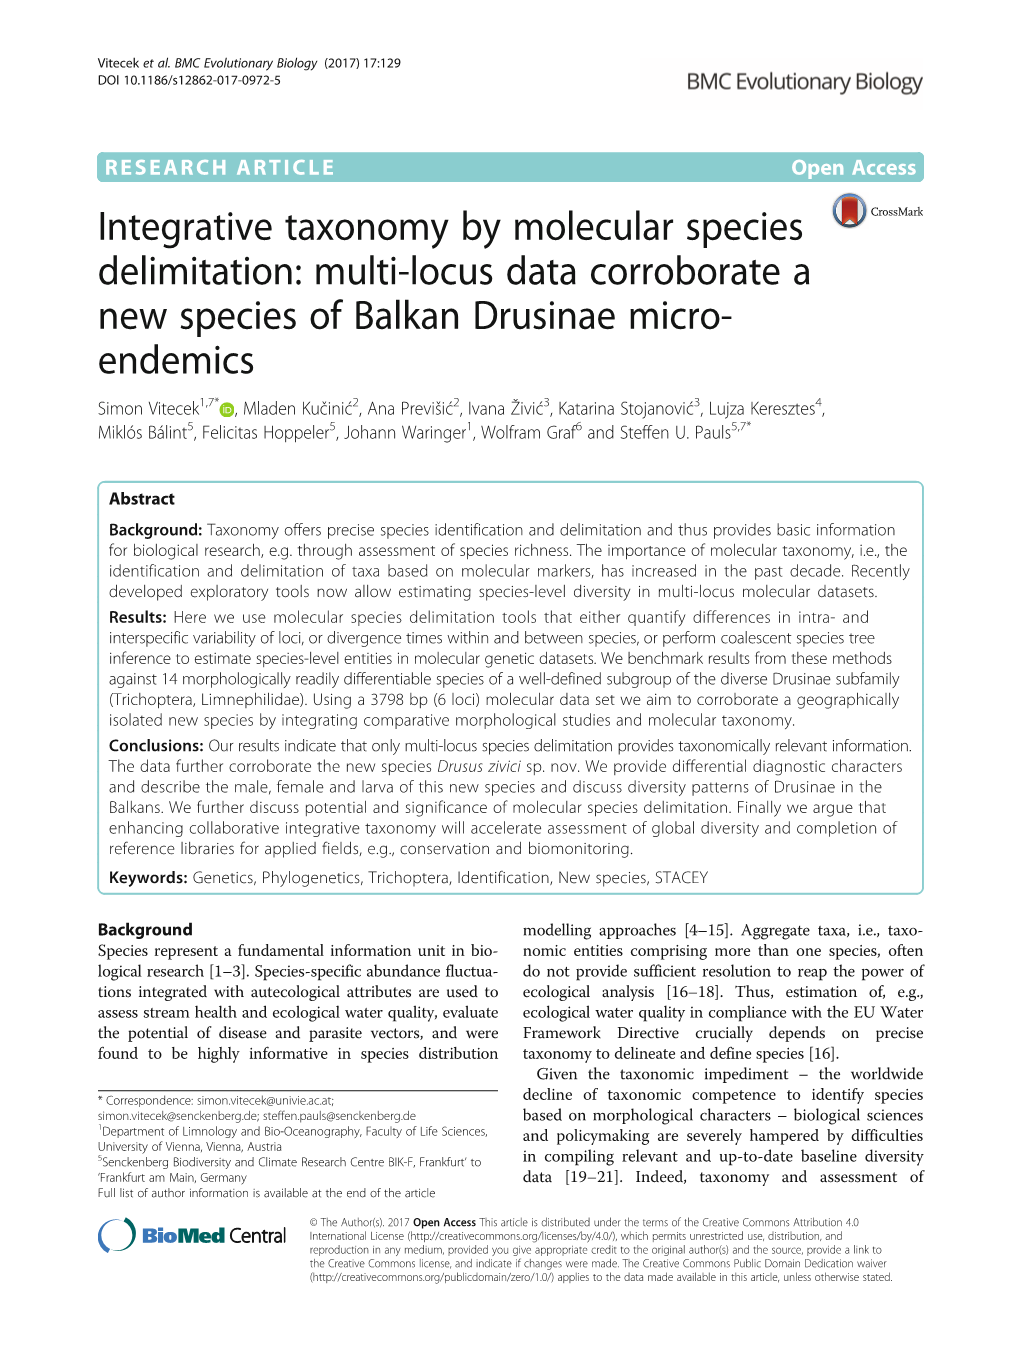 Multi-Locus Data Corroborate a New Species of Balkan Drusinae Micro